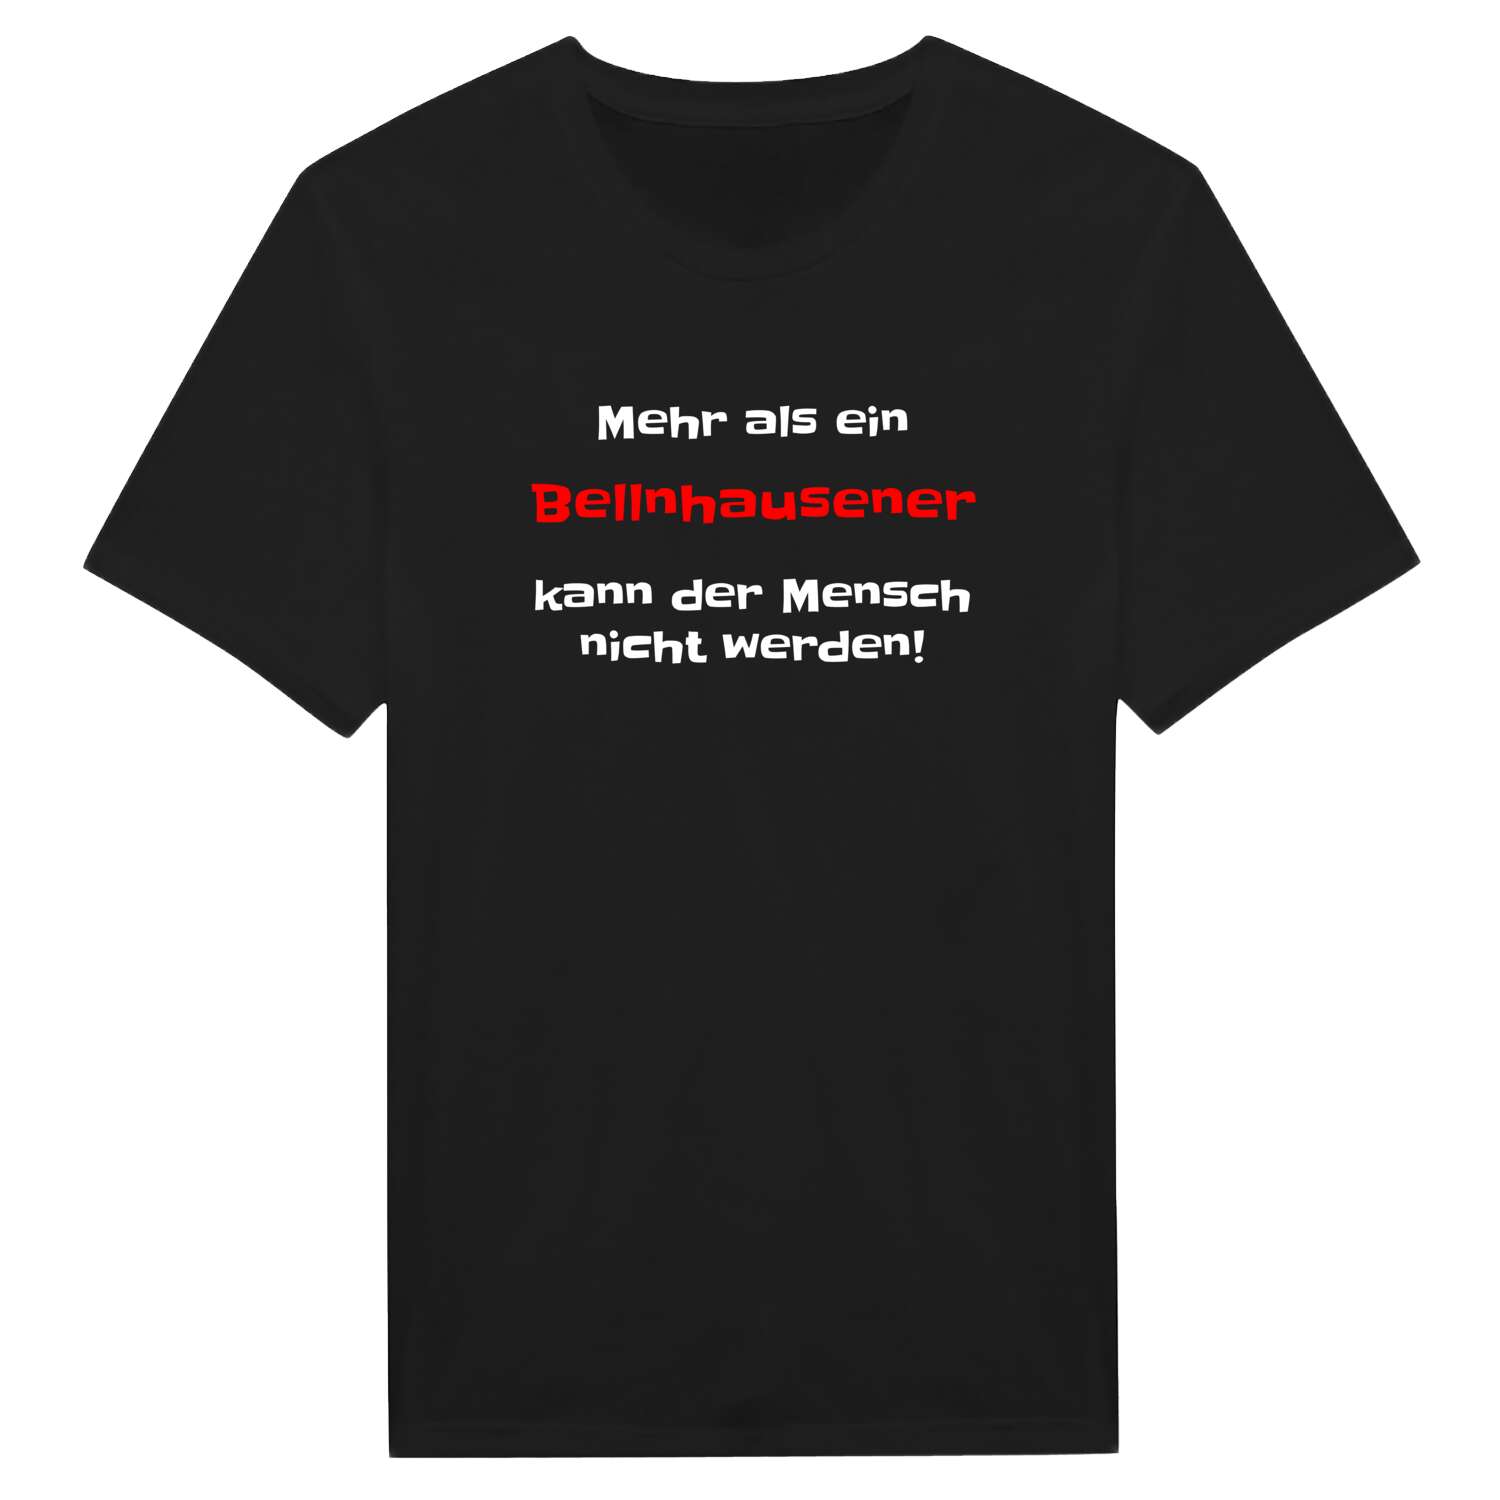 Bellnhausen T-Shirt »Mehr als ein«